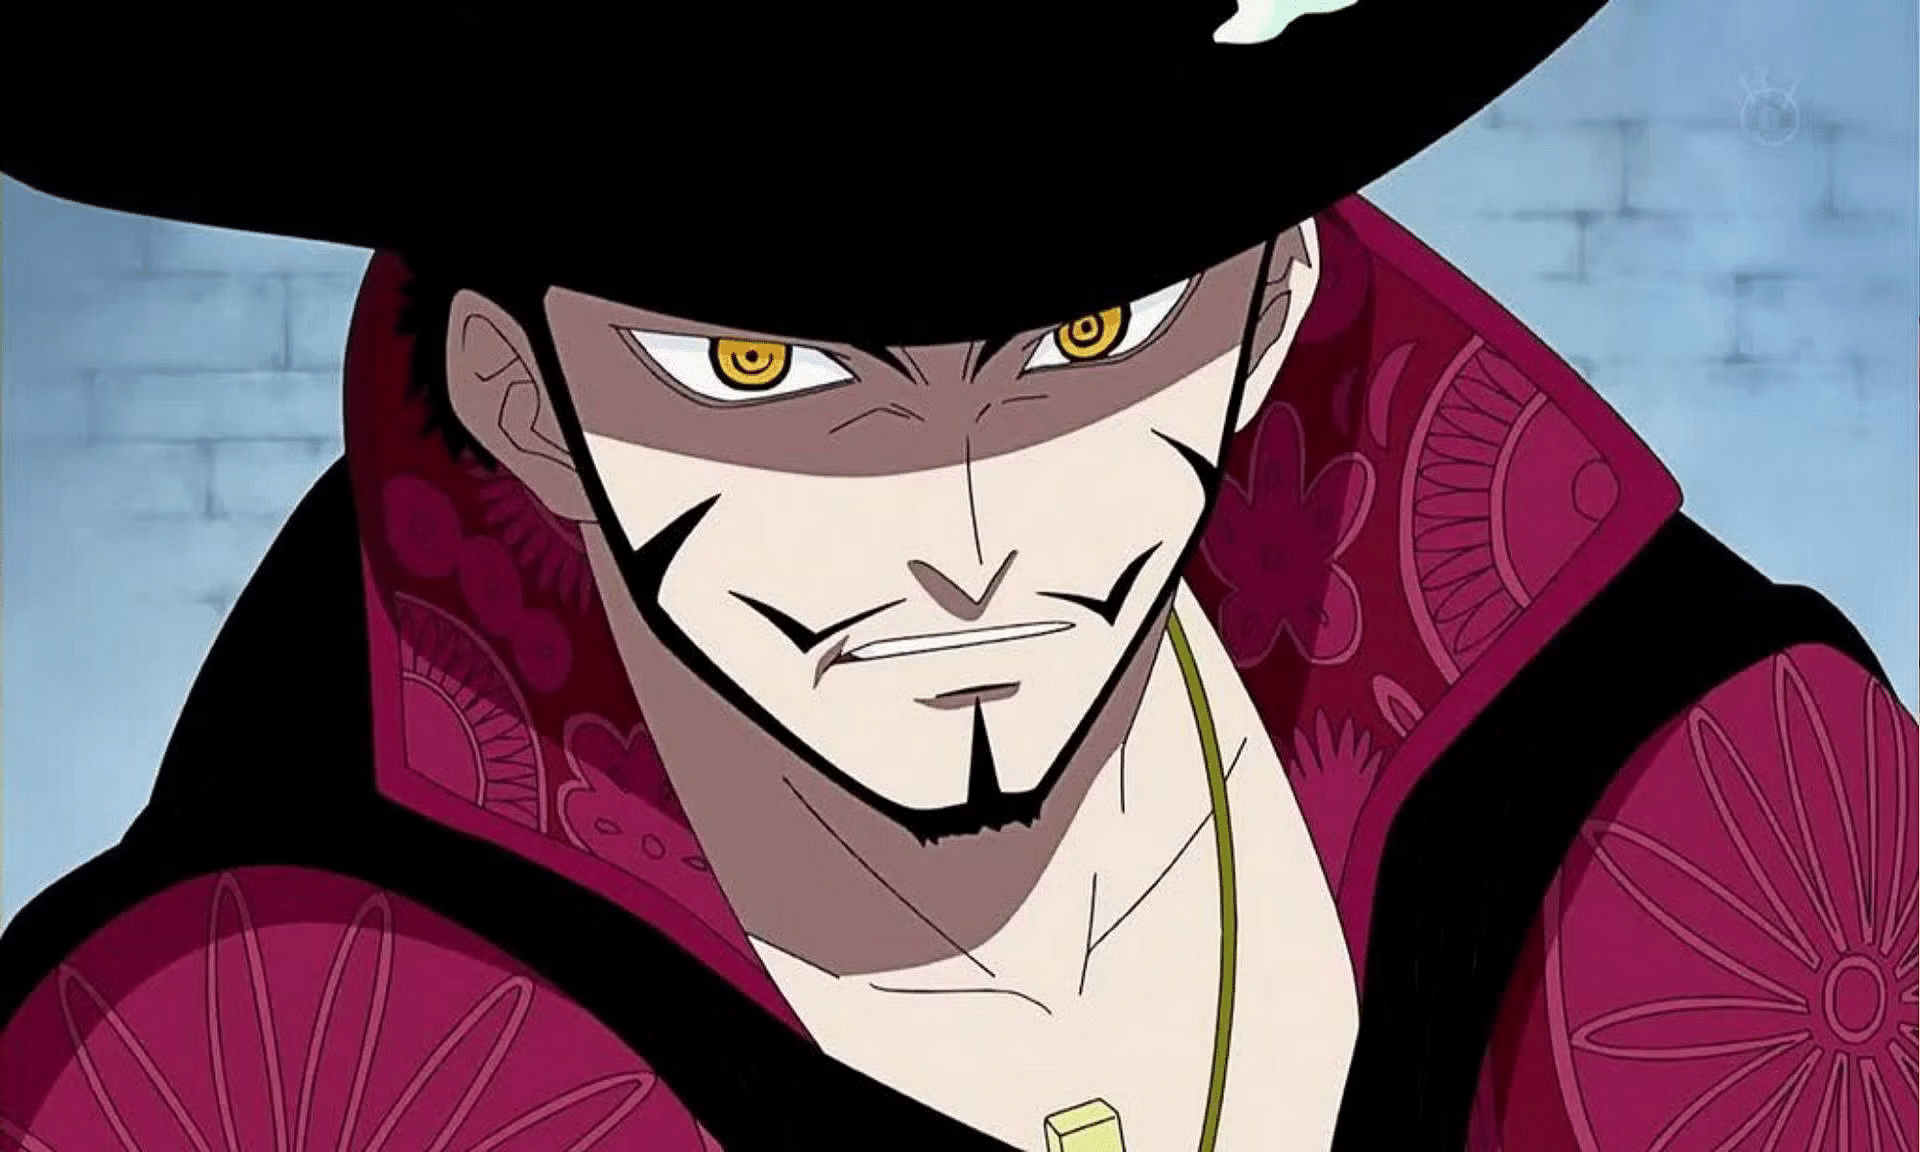 How strong is Mihawk's sword in One Piece? - Quora